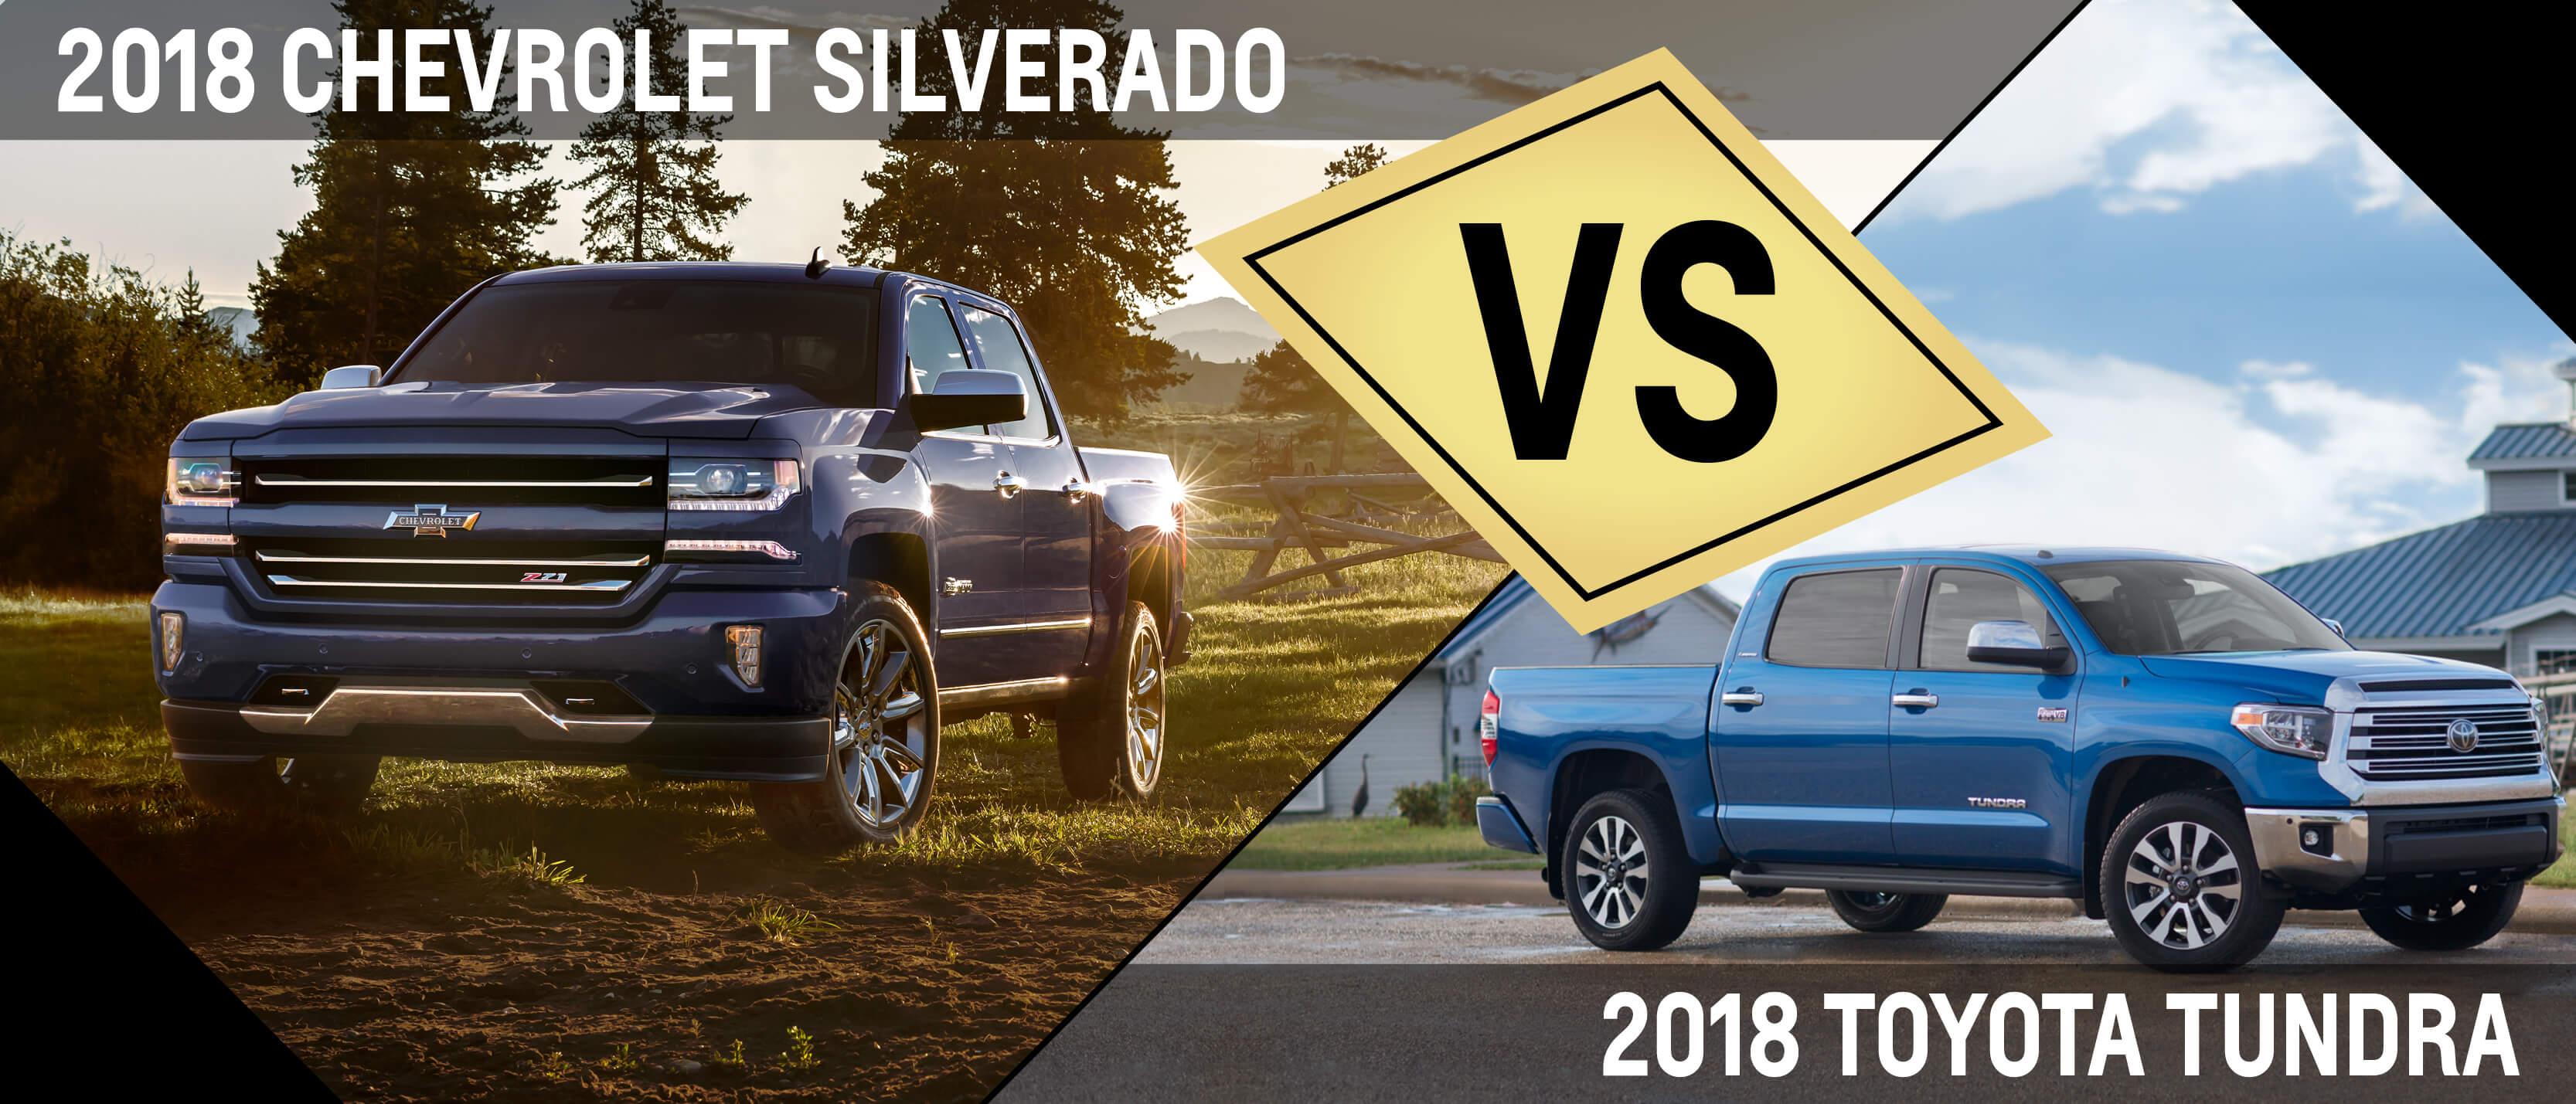 Silverado VS Tundra Comparison